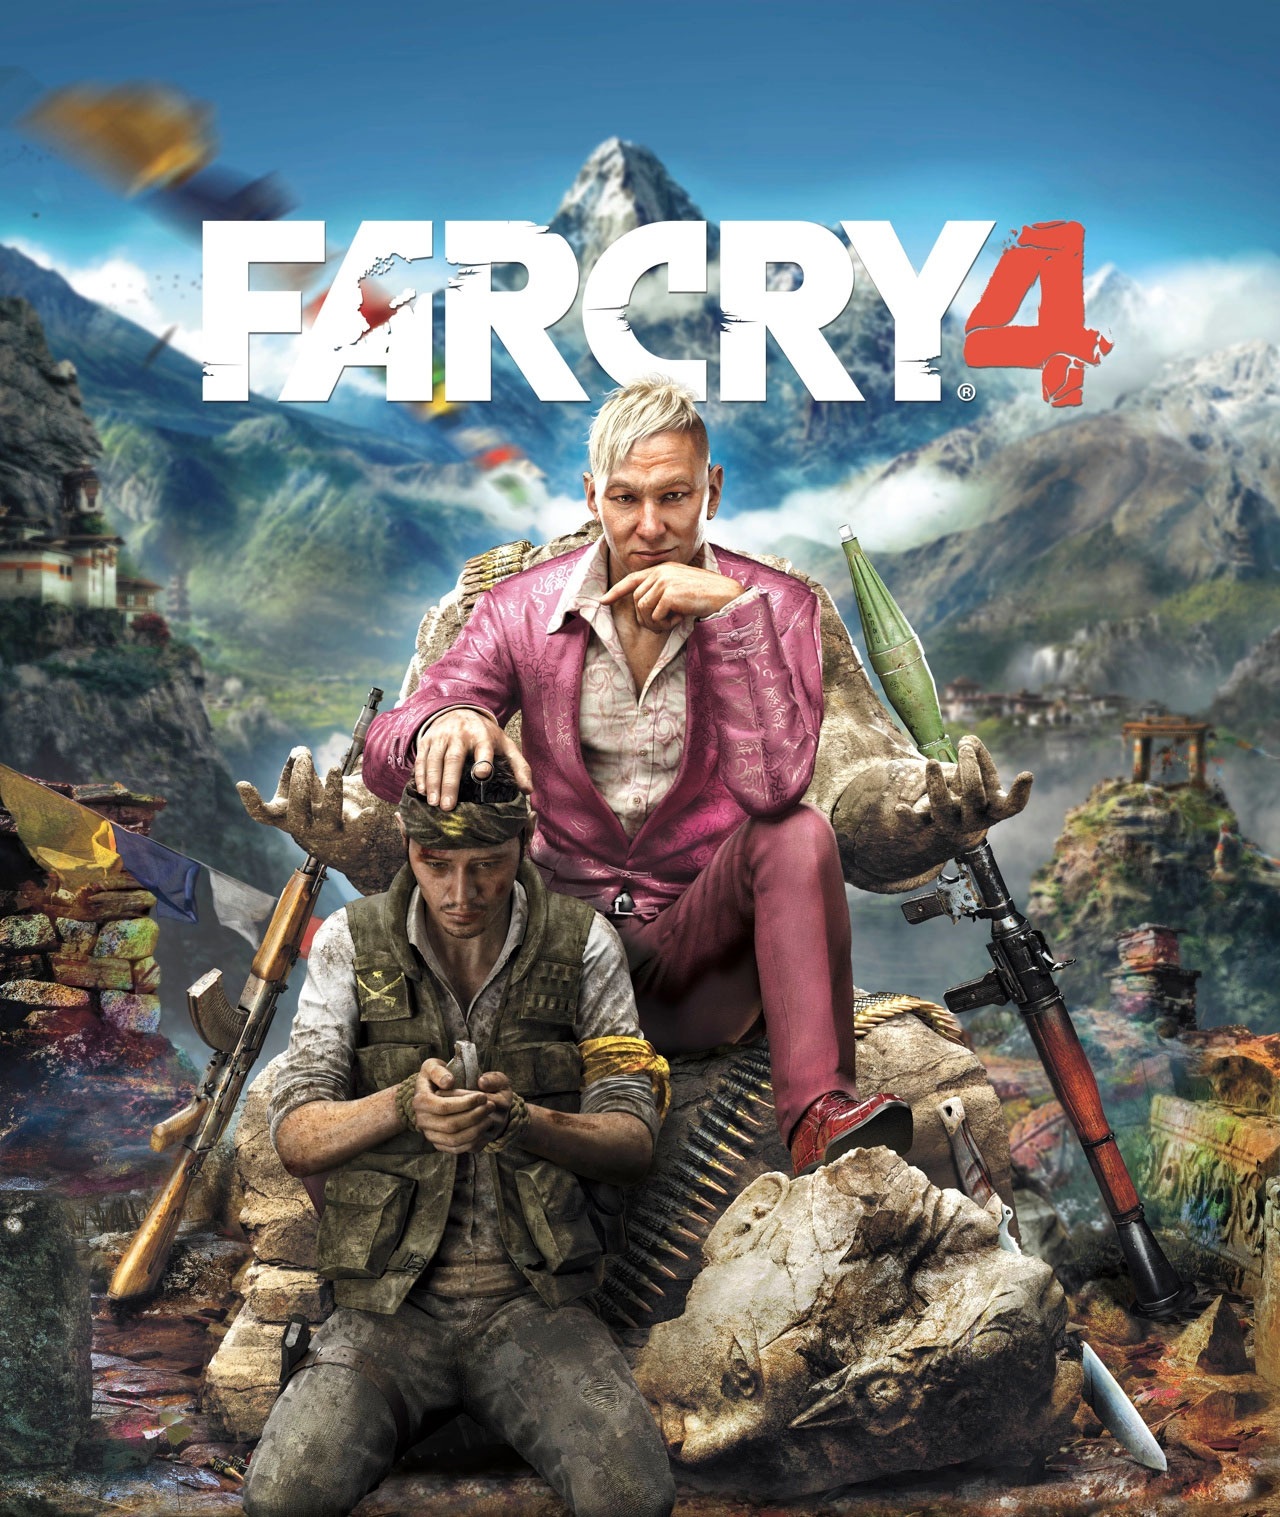 Far Cry, Far Cry Wiki